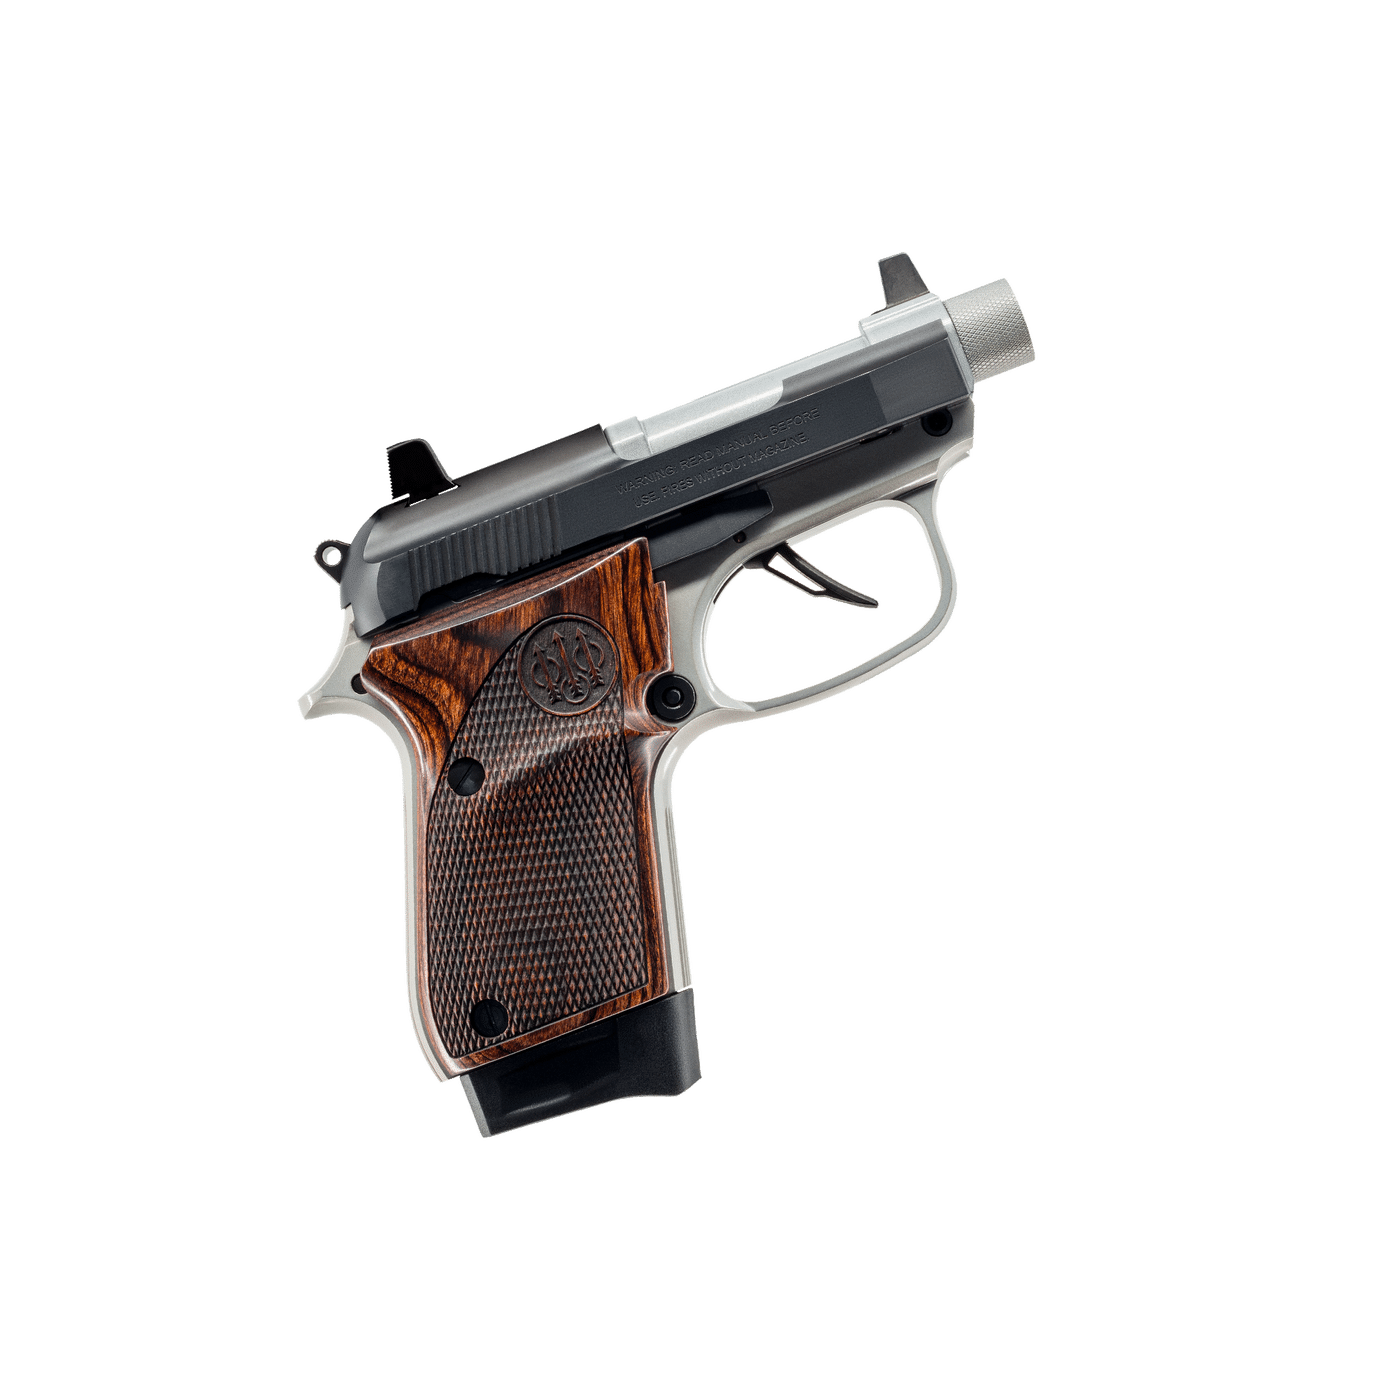 Buy Beretta 30X Tomcat Get Home Bag Pistol Online